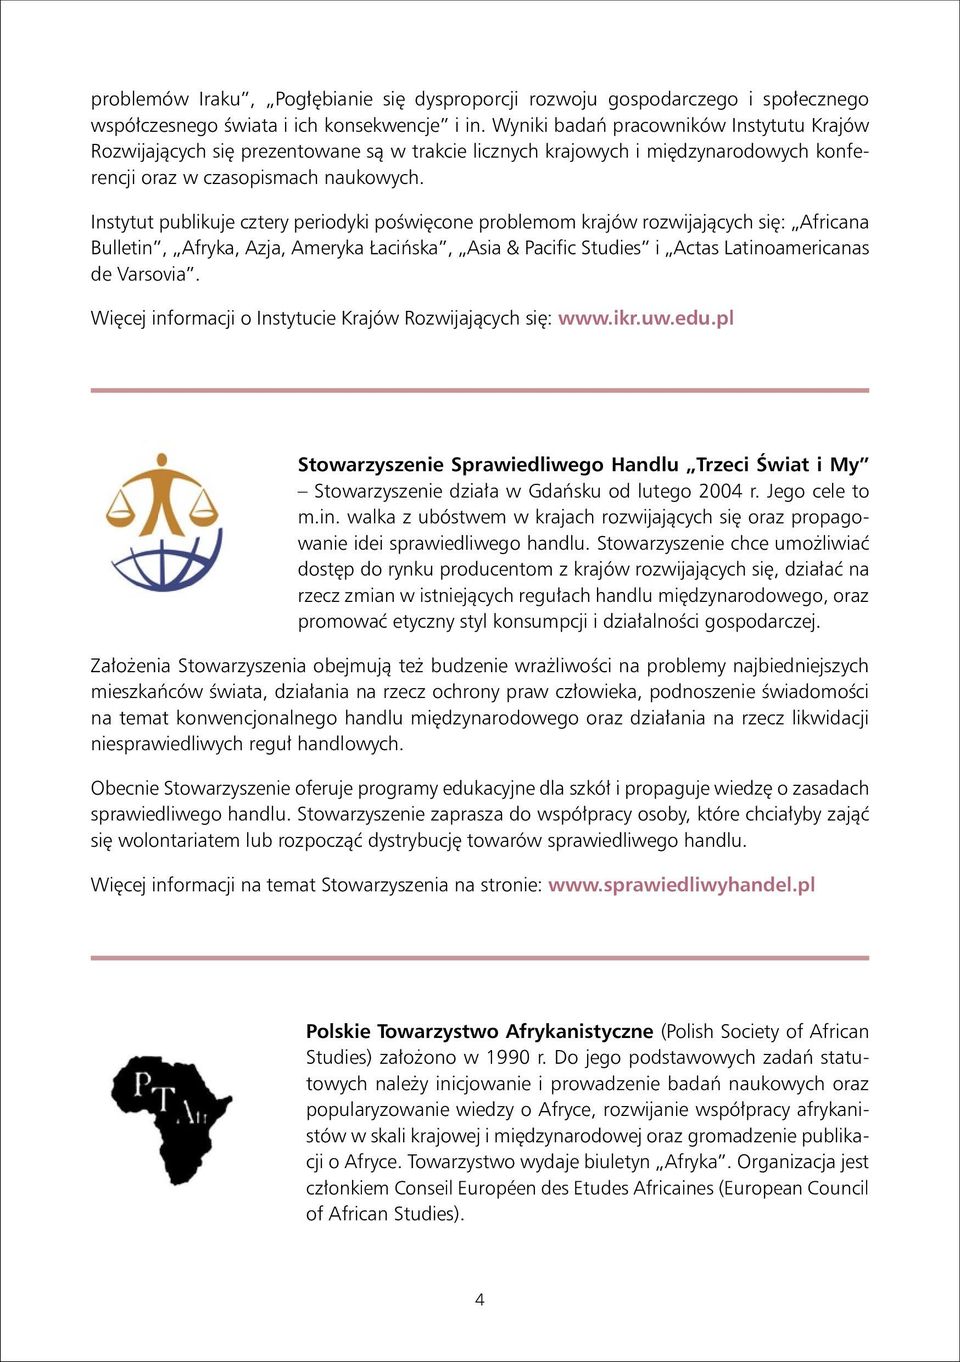 Instytut publikuje cztery periodyki poświęcone problemom krajów rozwijających się: Africana Bulletin, Afryka, Azja, Ameryka Łacińska, Asia & Pacific Studies i Actas Latinoamericanas de Varsovia.